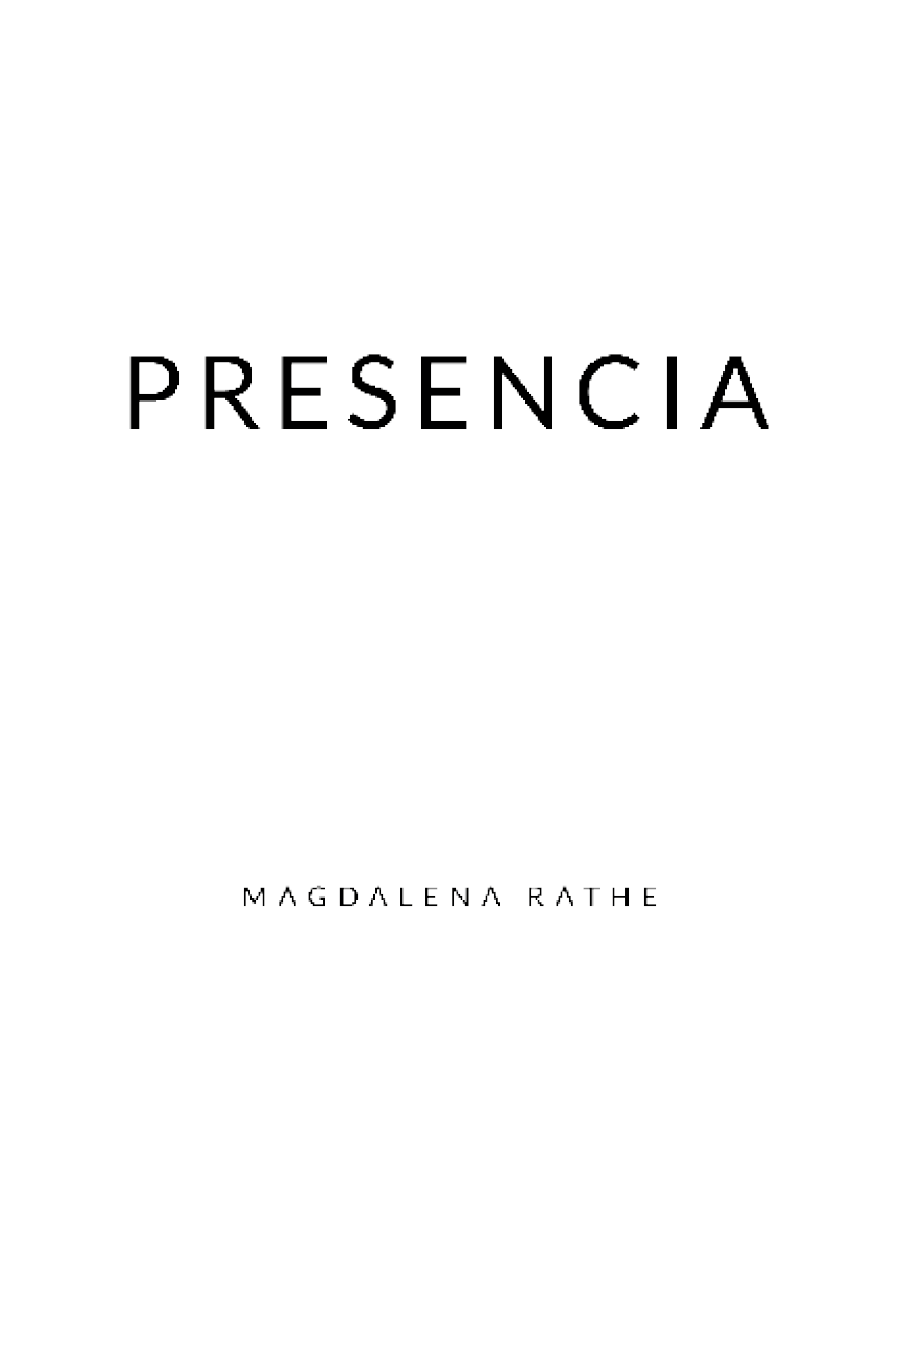 Presencia Primera edición 2019 ISBN 9788417669164 ISBN eBook 9788417669782 - photo 1